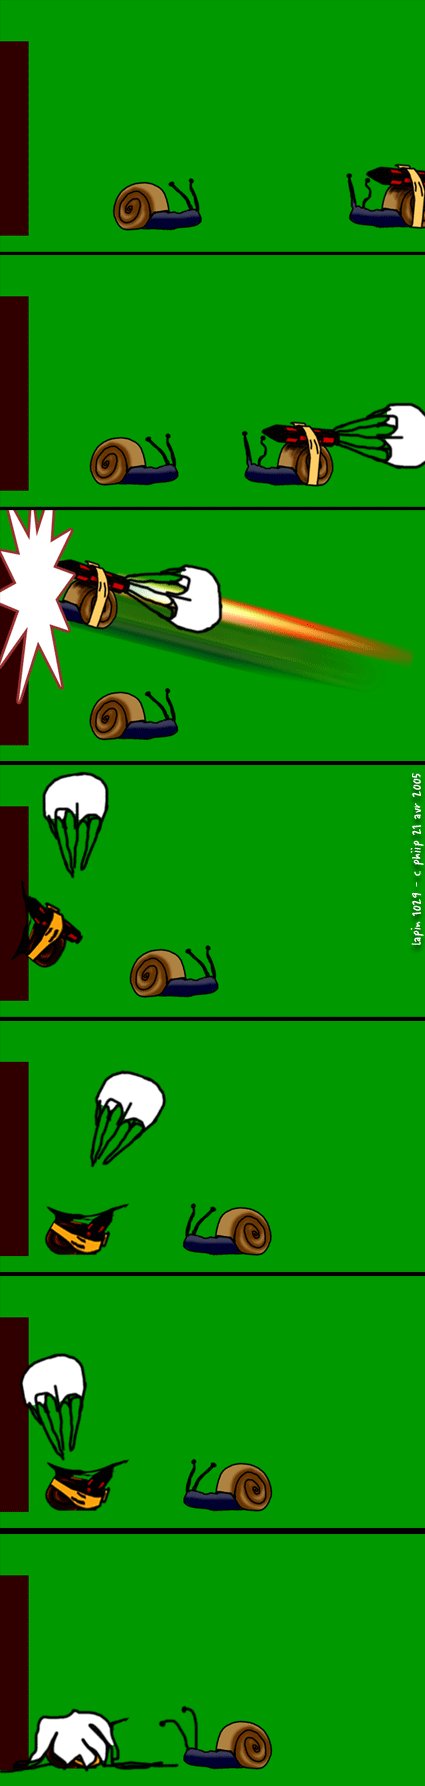 les escargots géants en parachute